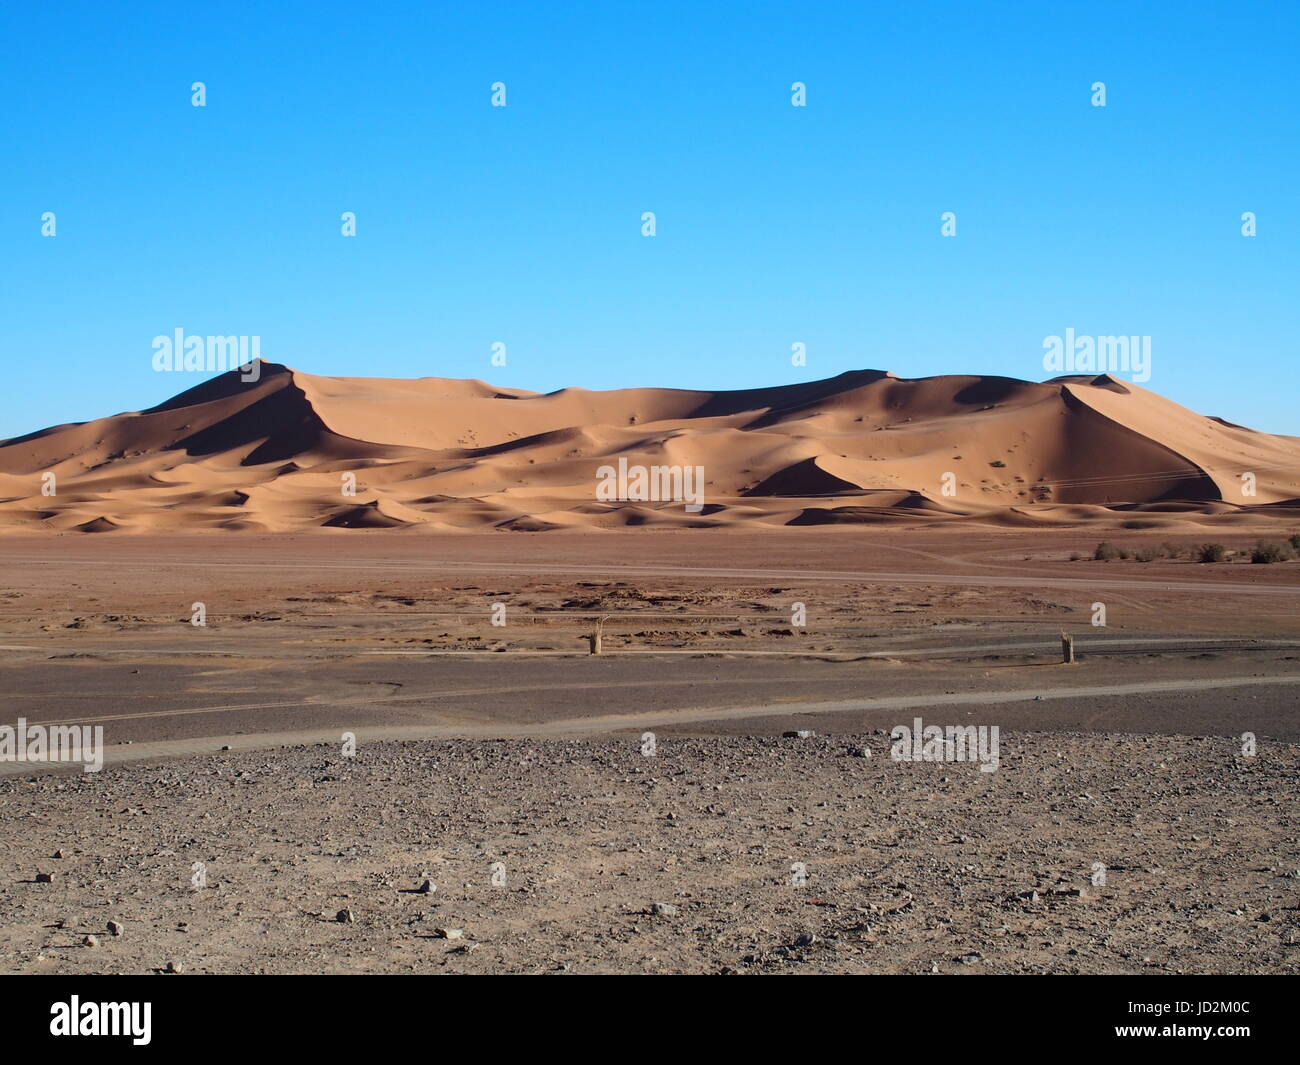 ERG CHEBBI MERZOUGA Dünen Bereich in der Nähe der Stadt und der Landschaft von Sandy Desert Formationen im Südosten Marokkos in der Nähe der Grenze mit ALGIERIA, klaren blauen Himmel. Stockfoto